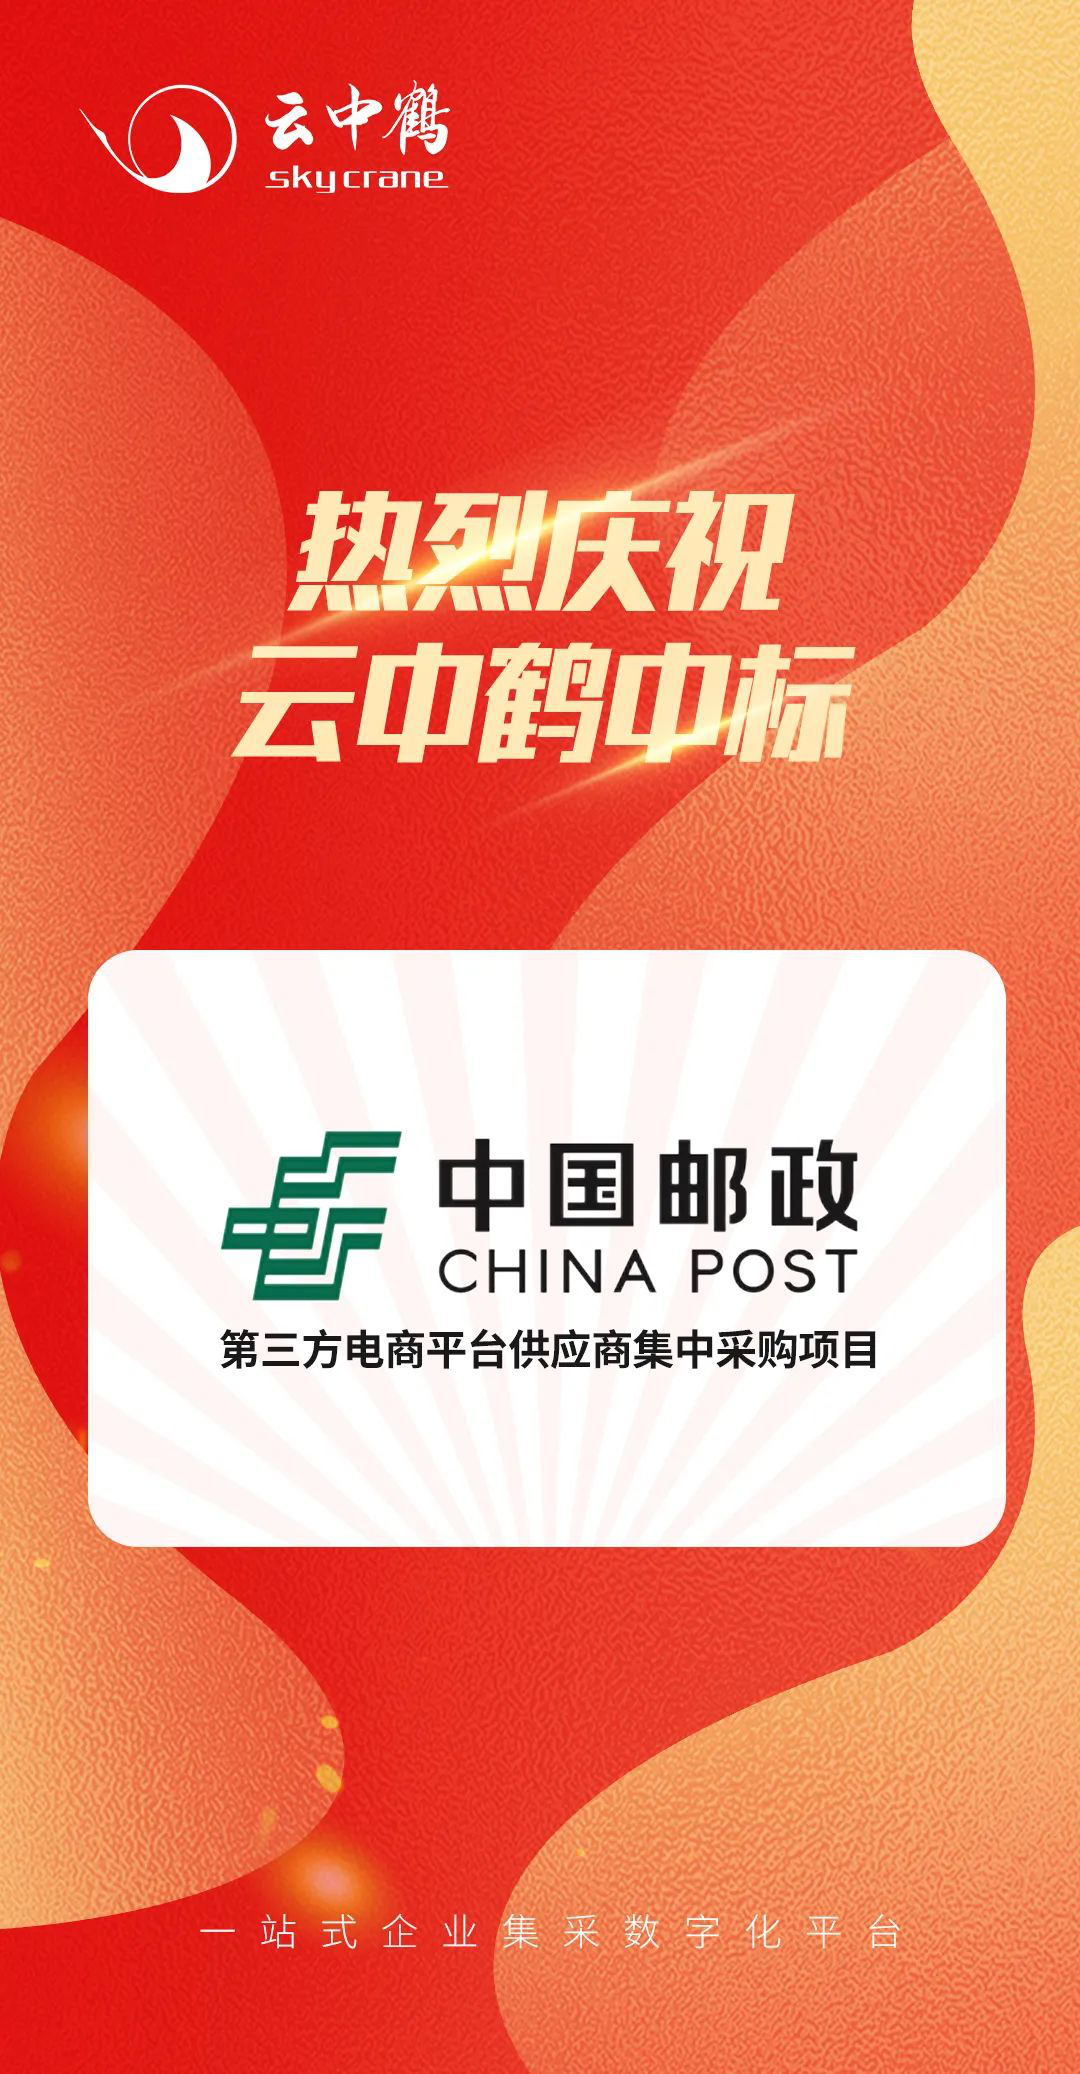 云中鹤中标中国邮政第三方电商平台供应商集中采购项目